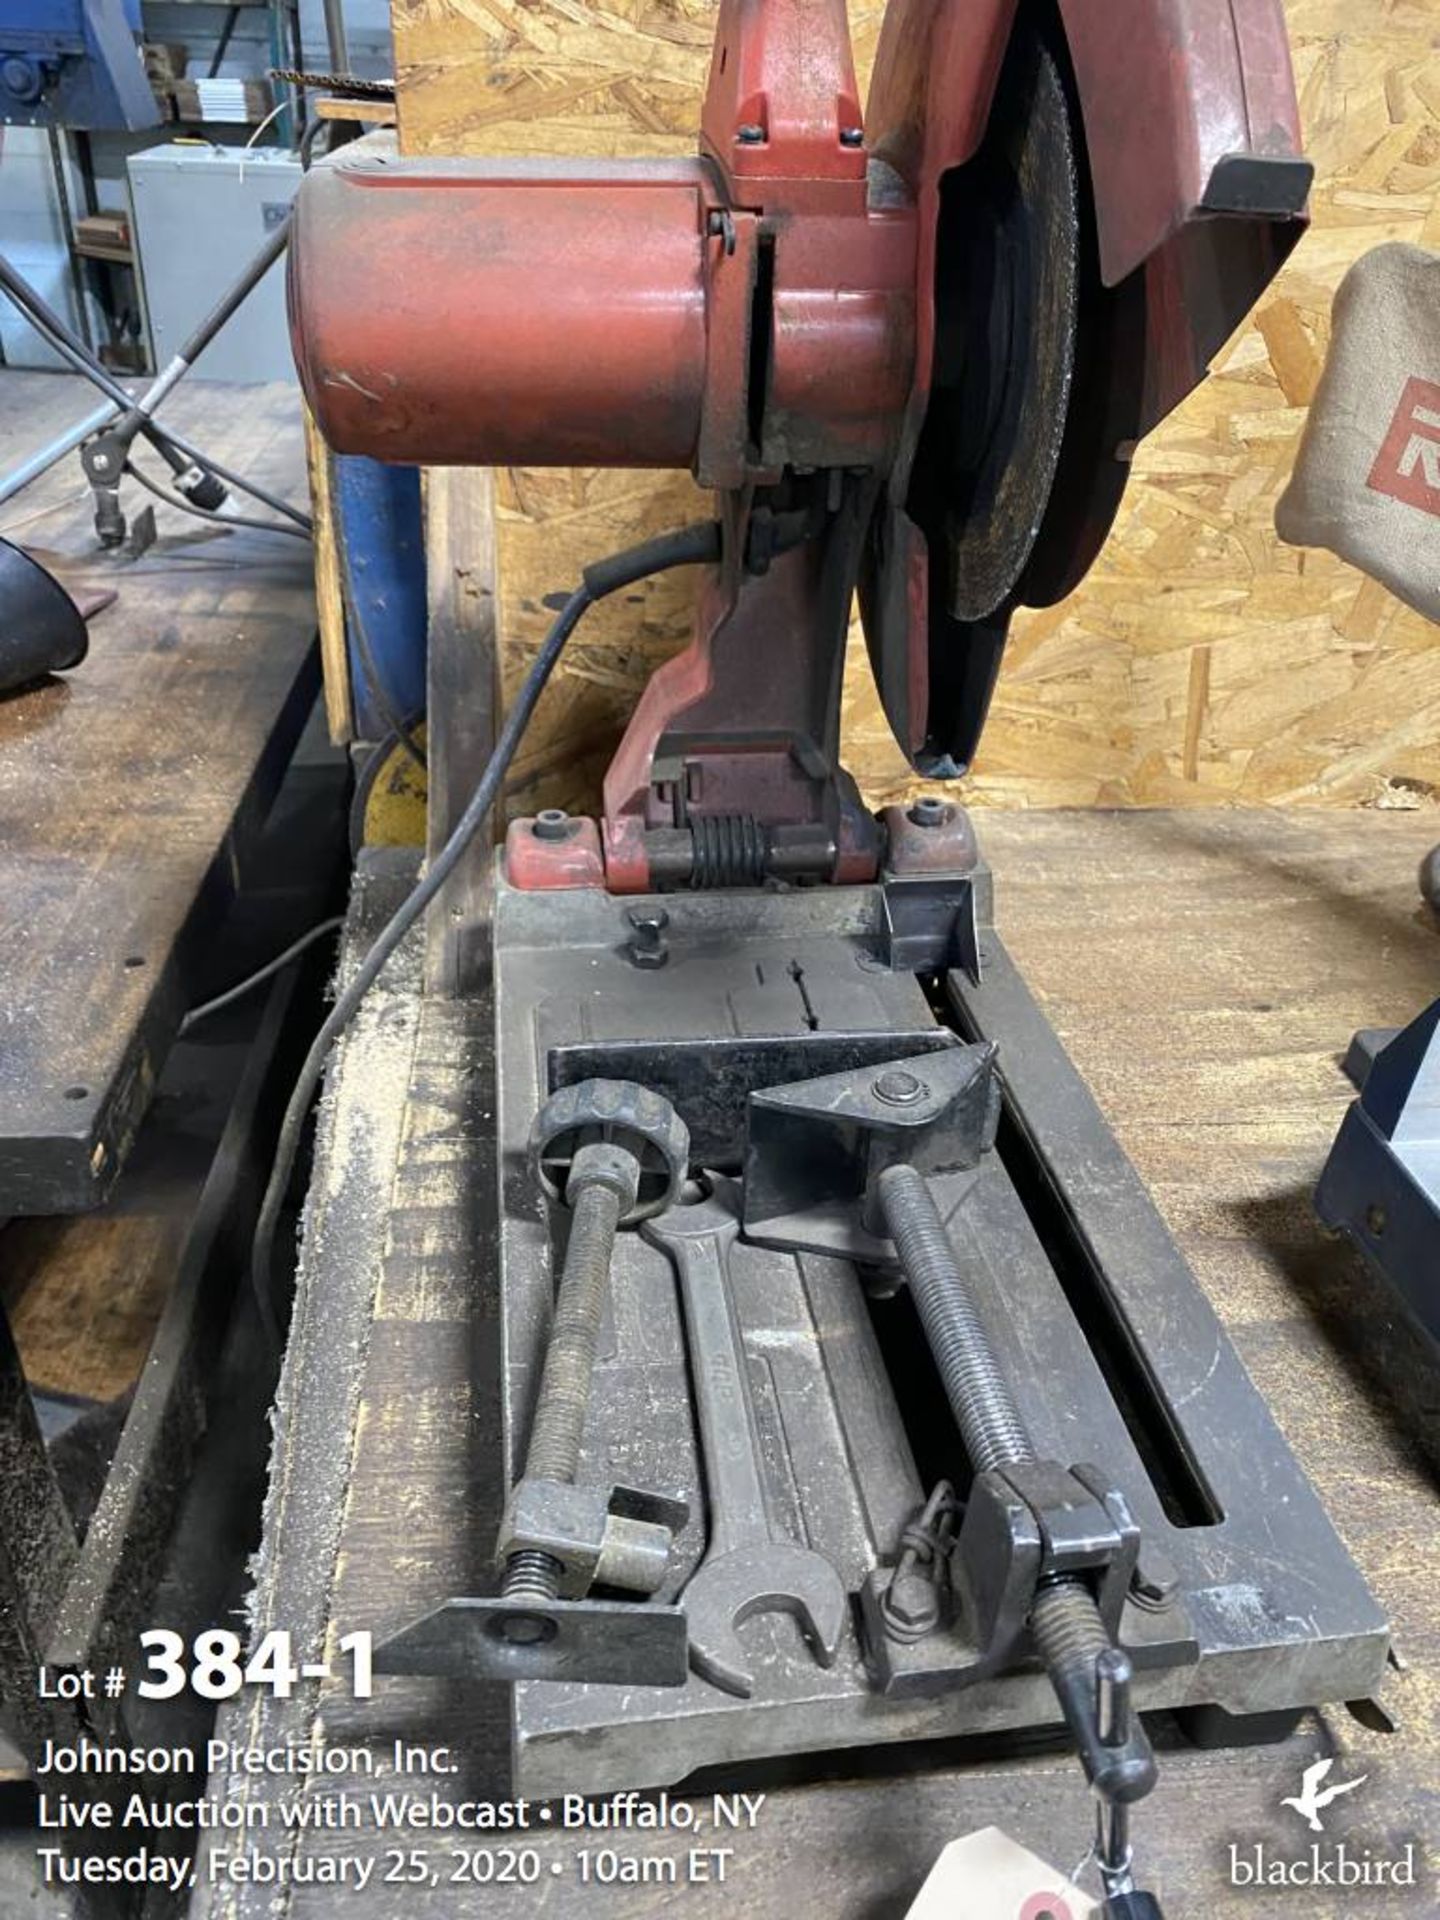 Milwaukee chop saw model 6176-20, 10" mitre saw